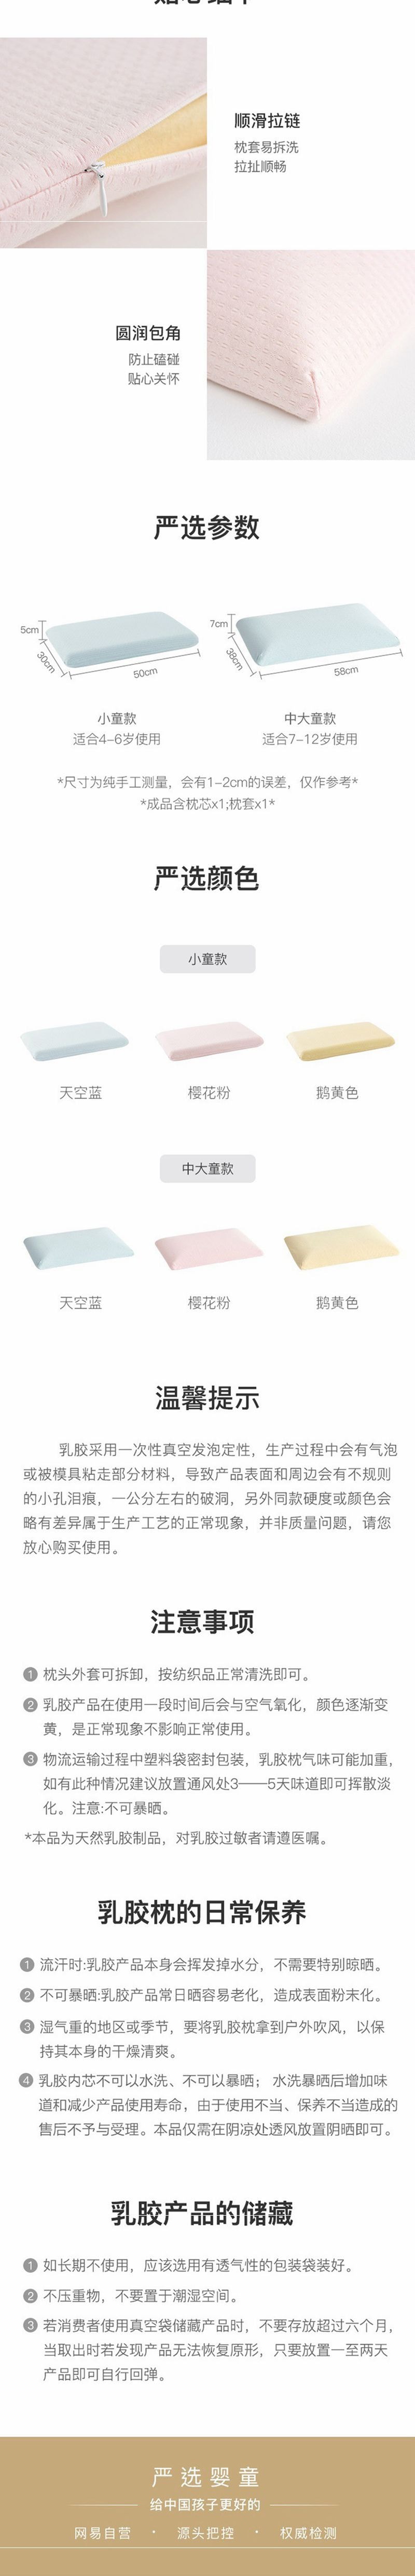 网易严选 儿童天然乳胶面包枕 (泰国进口纯乳胶) 蓝色-小童款(30x50cm)